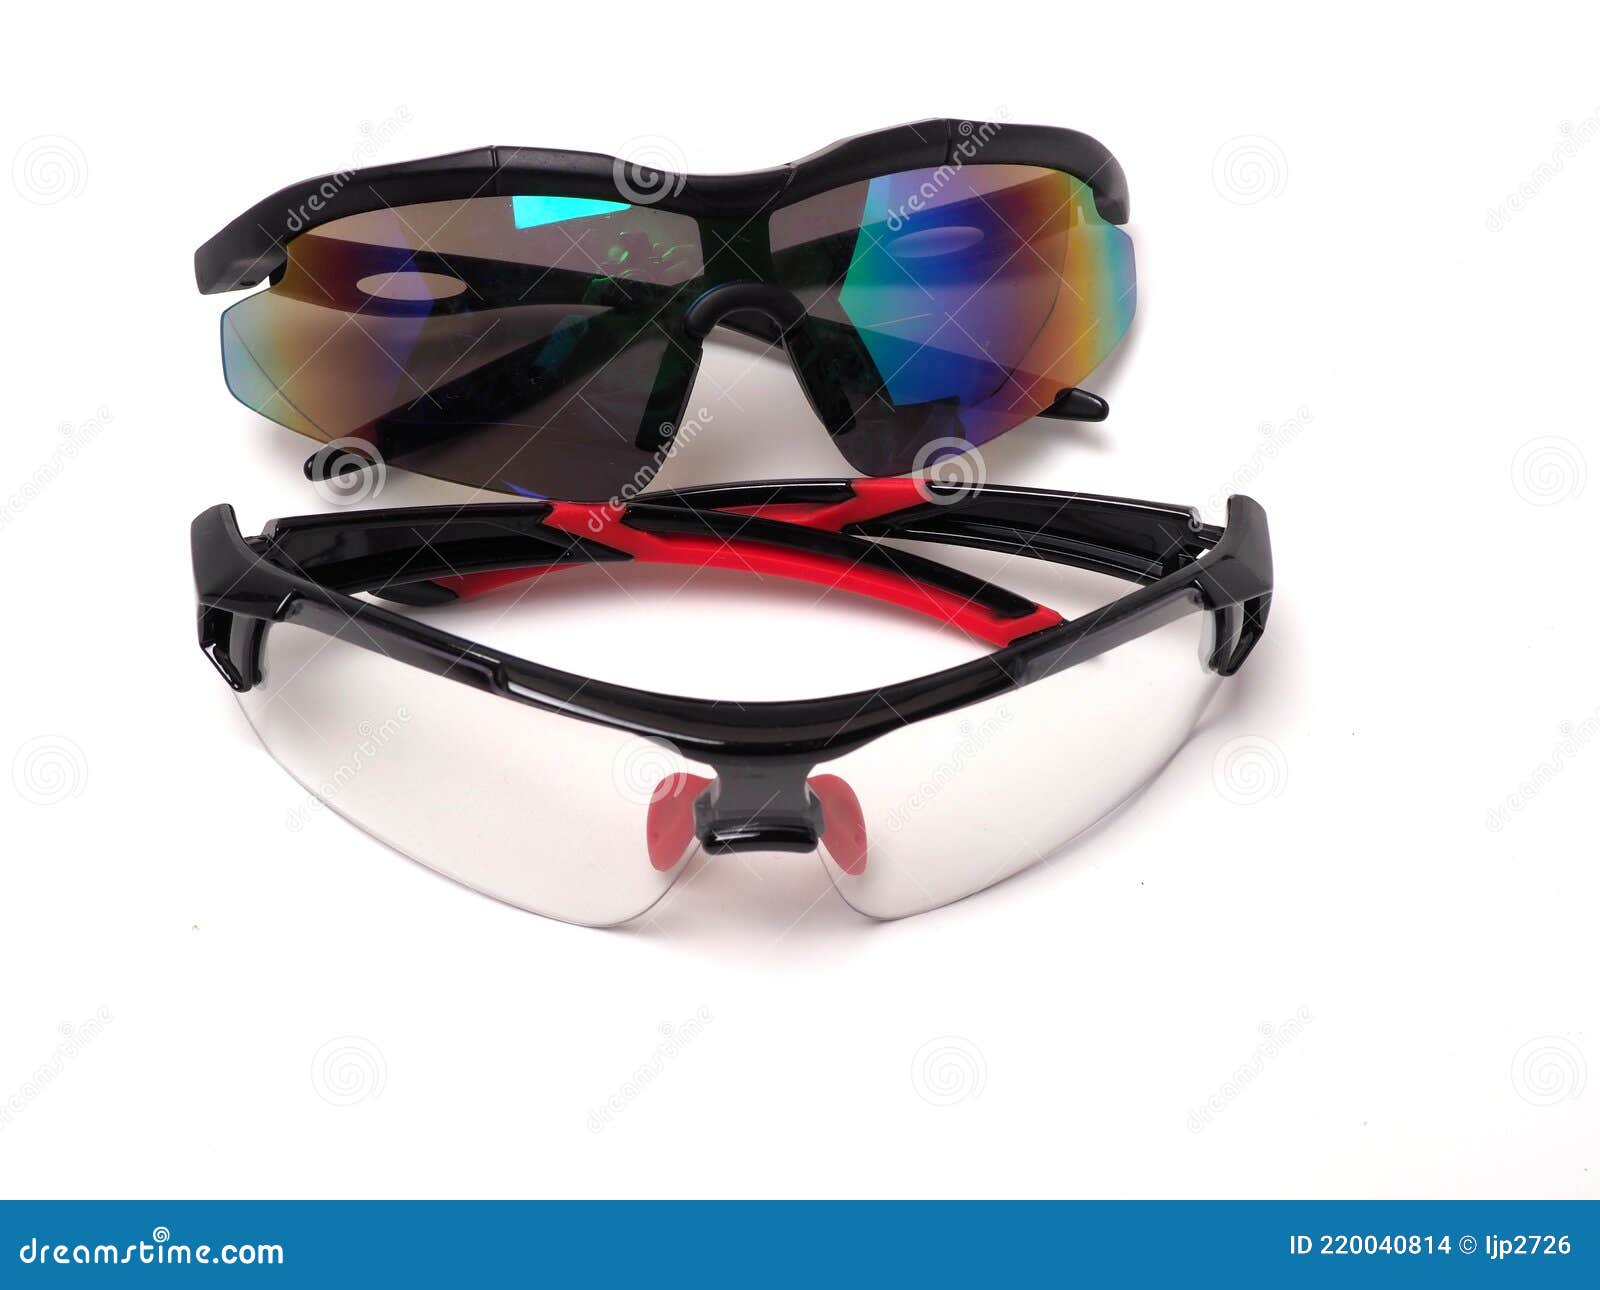 Imagen De Gafas De Sol Anti Que Es Adecuado Para La Actividad Al Aire Libre Para Proteger Los Ojos De Luz Ultravioleta Foto de archivo - Imagen de lentes, playa: